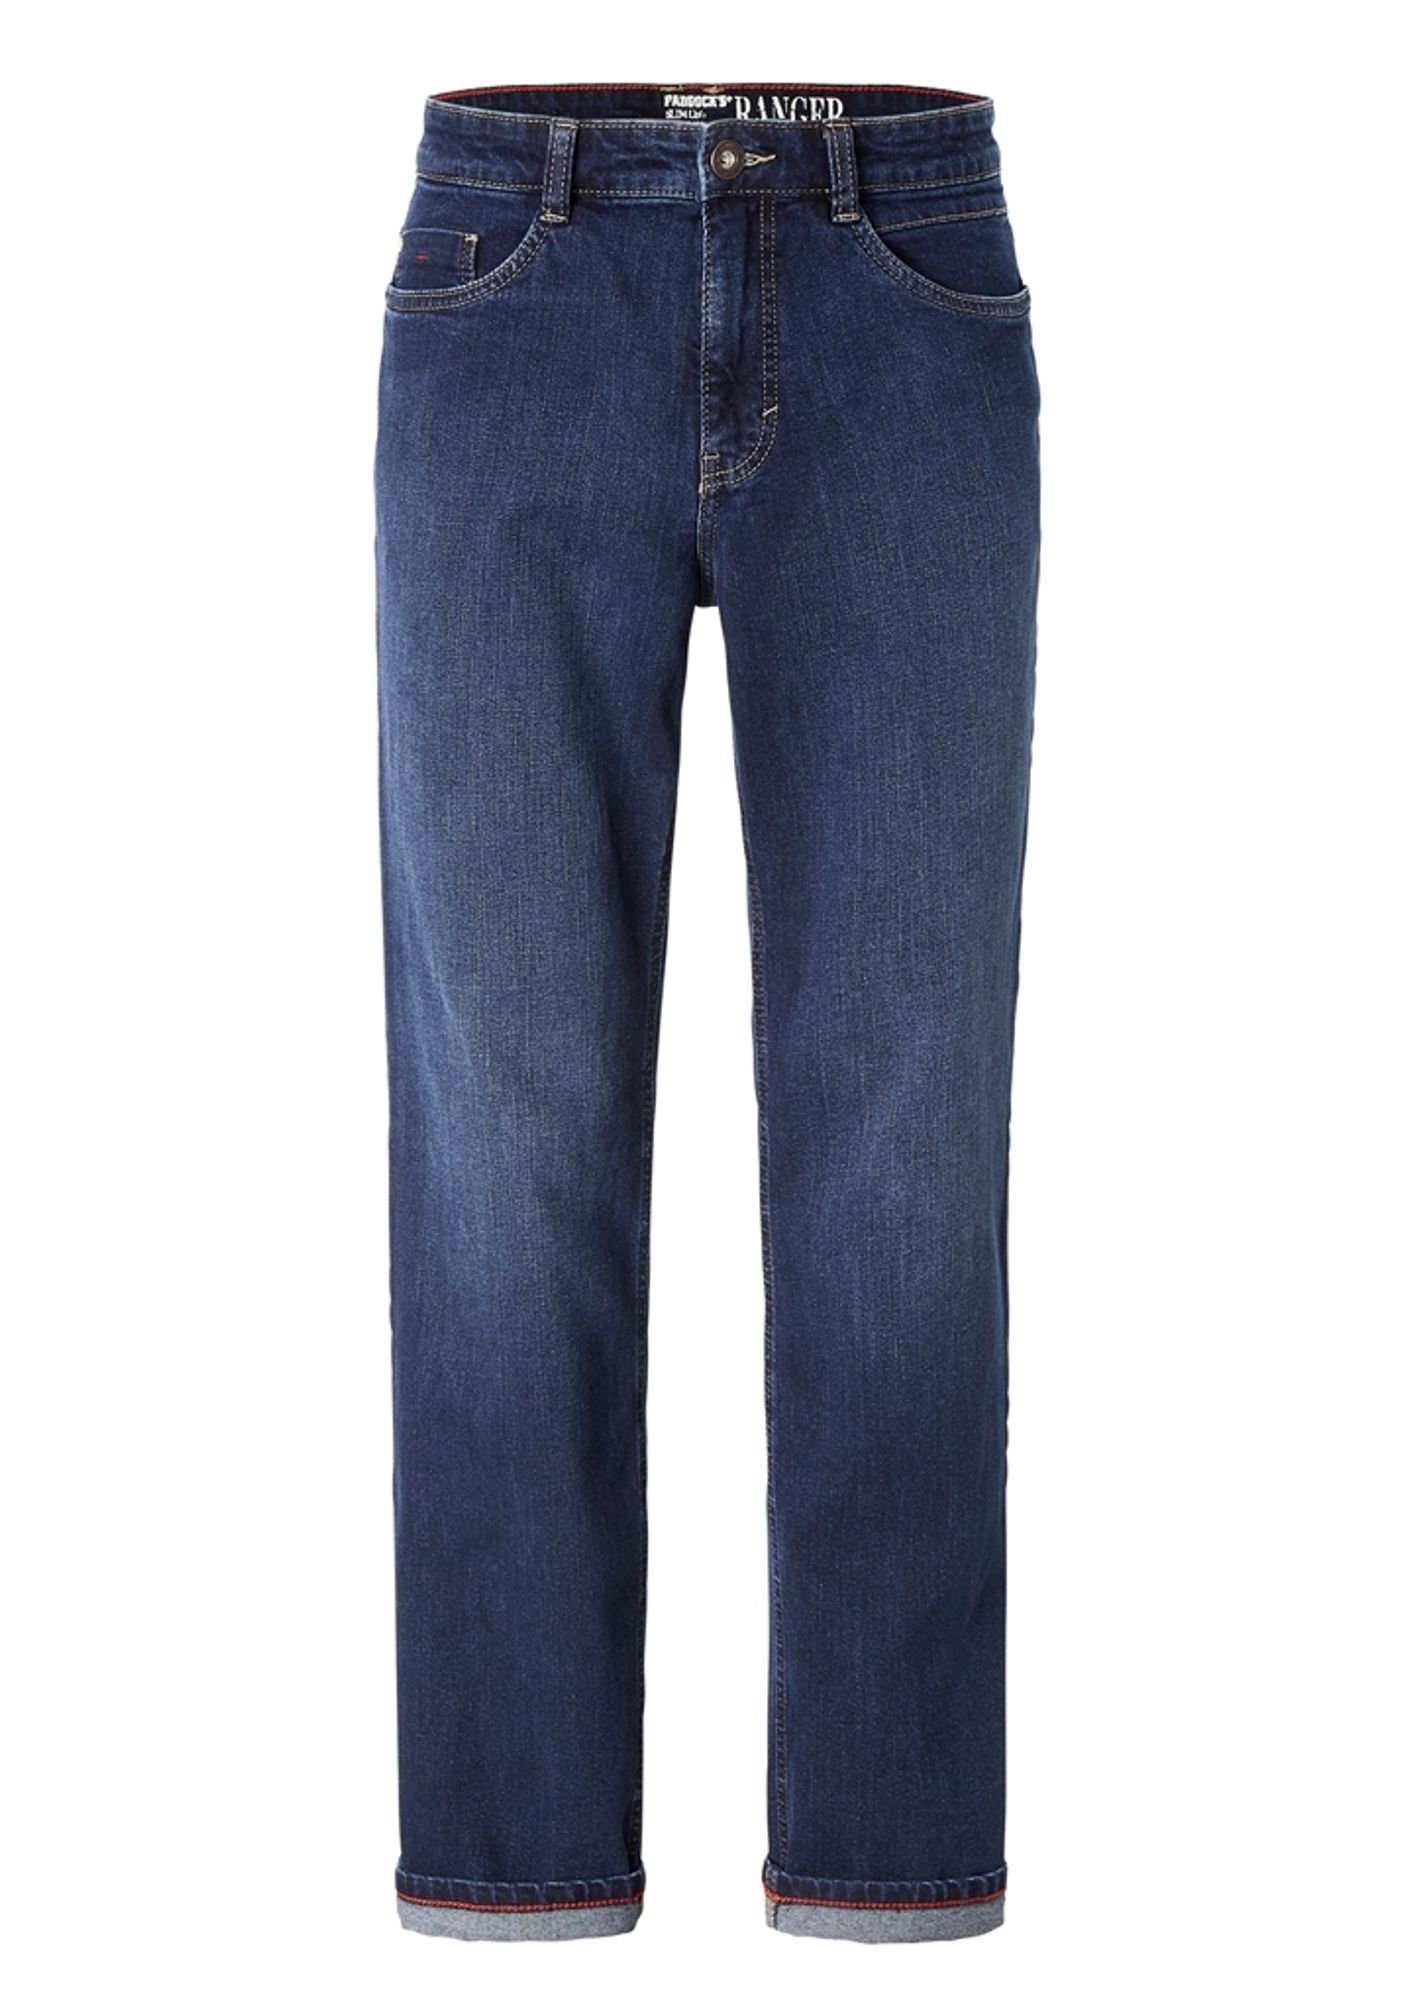 Paddock's 5-Pocket-Jeans RANGER PIPE dark stone used (4310) | 